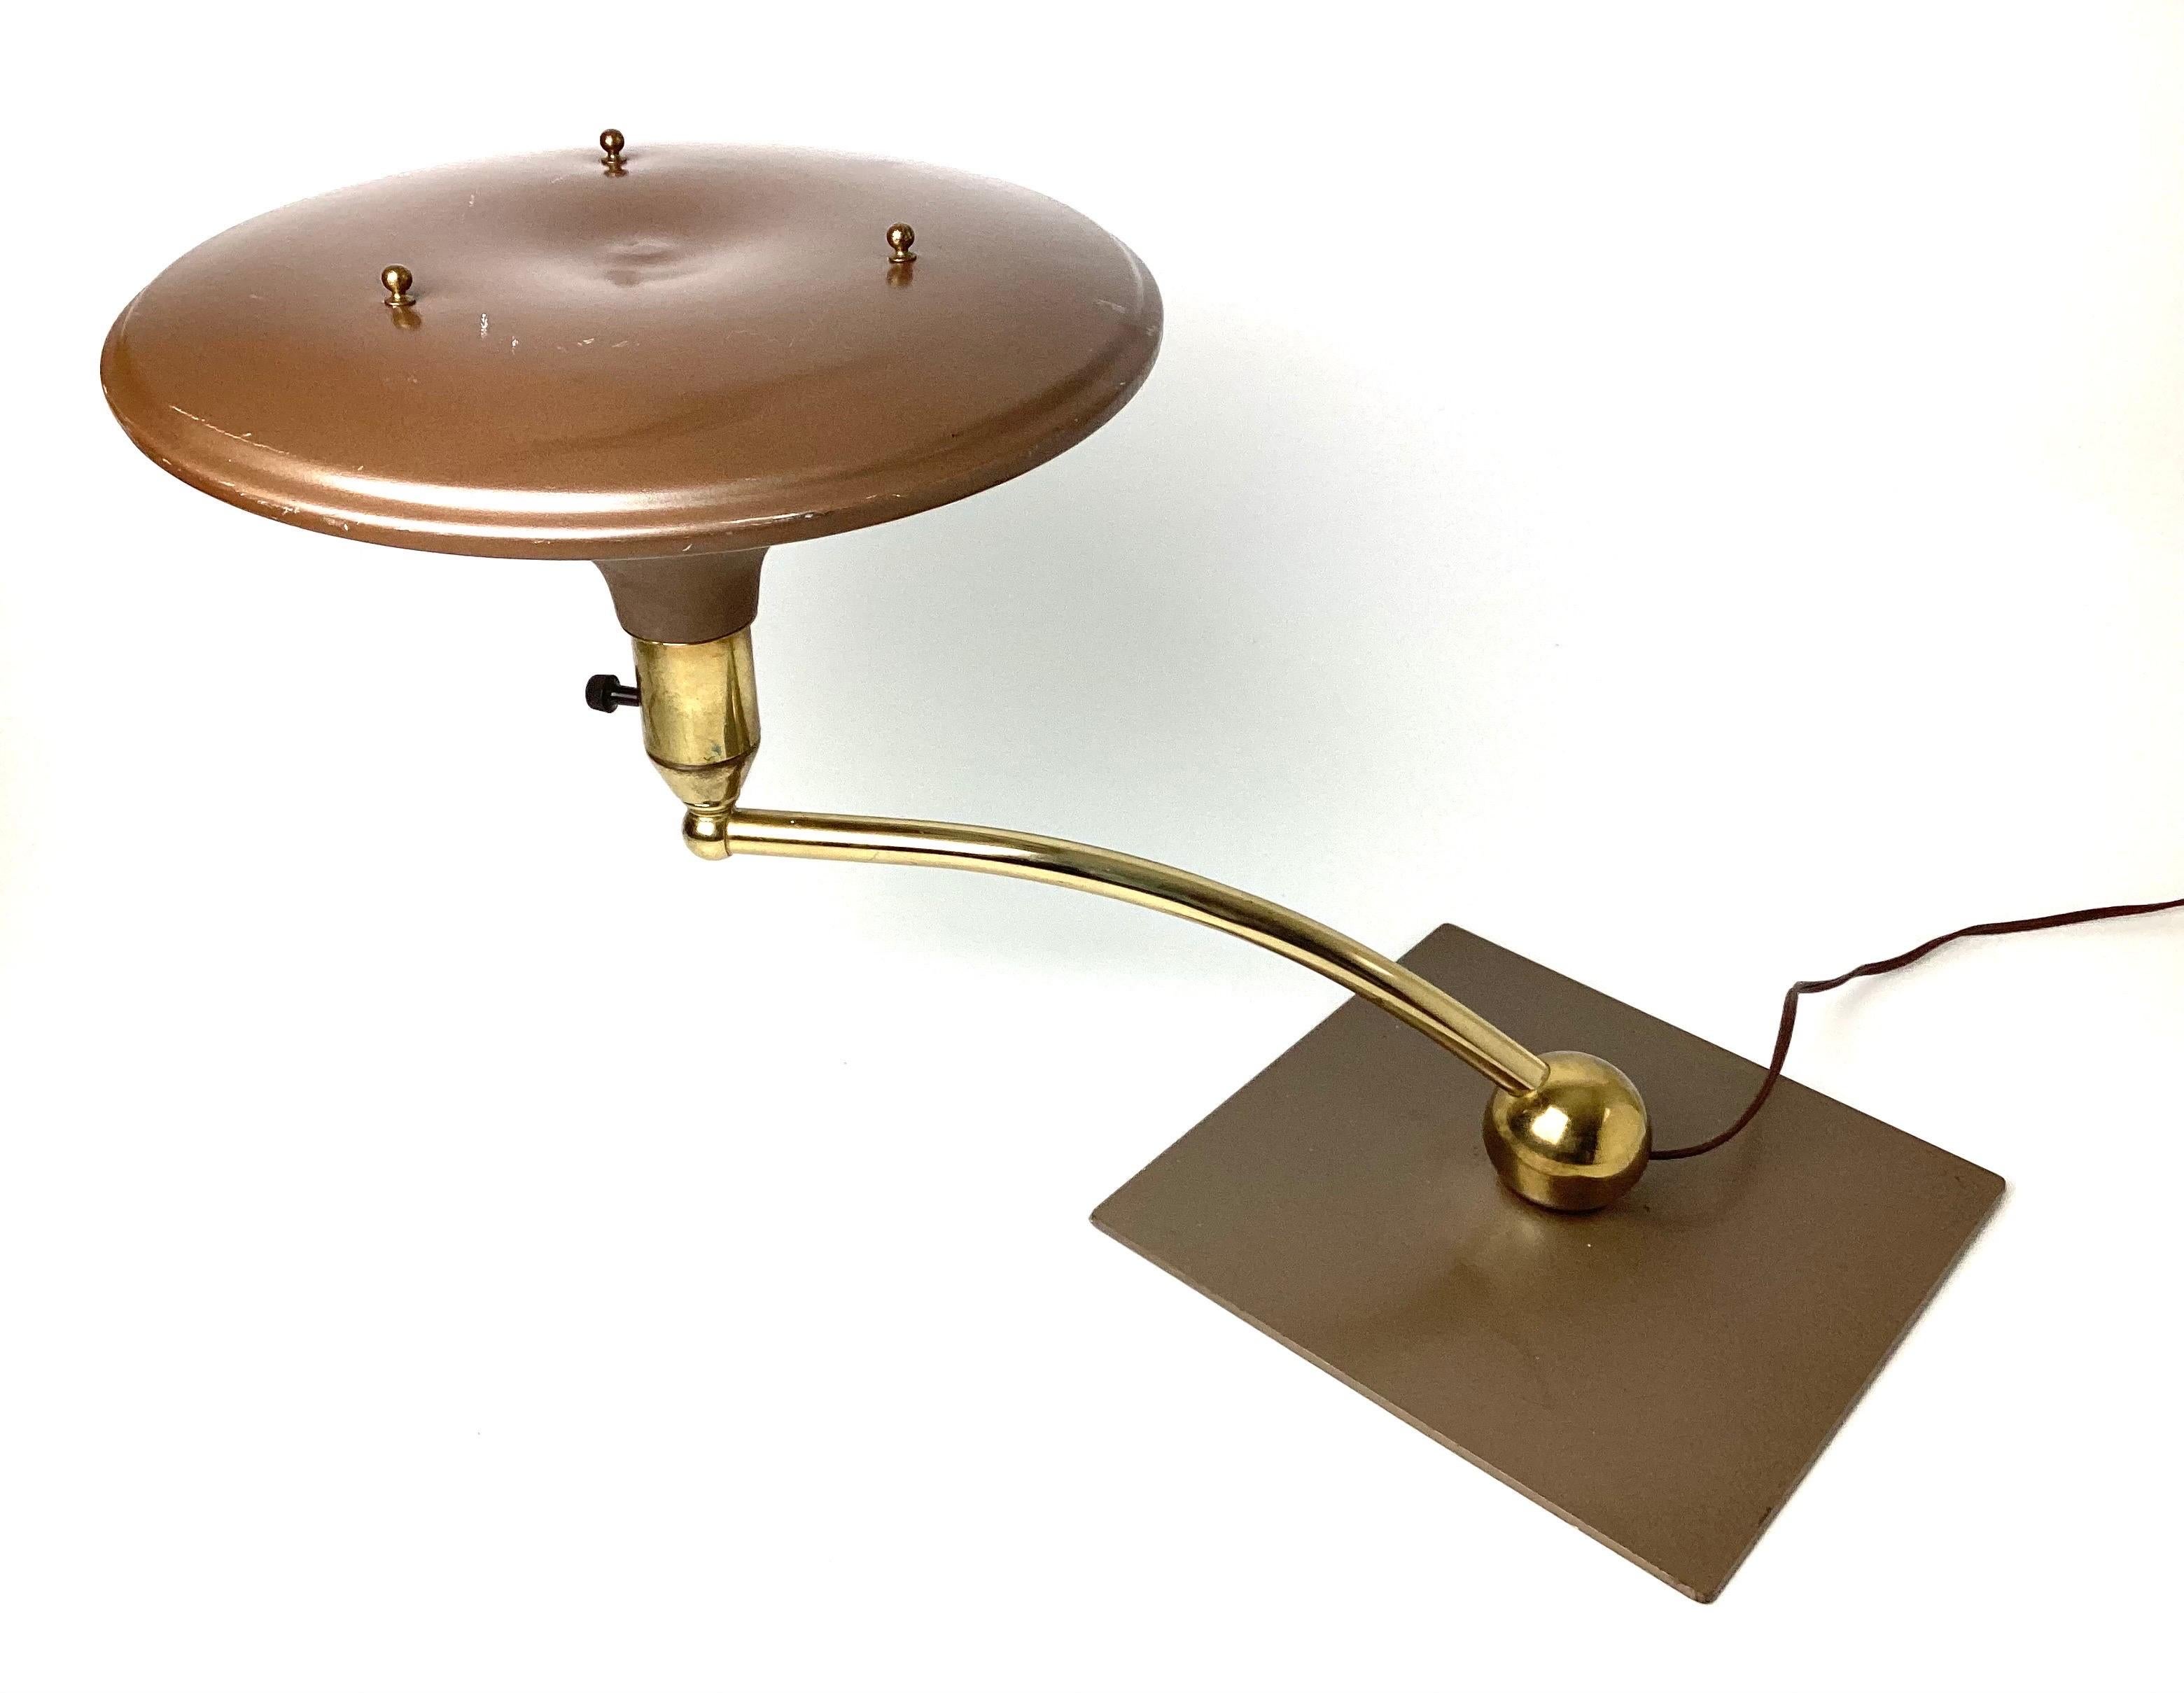 Lampe de table Art Deco 1930s Modern sight light. Laiton avec abat-jour et base en émail brun cuit au four. Le bras pivote. État approprié à l'âge avec quelques traces mineures d'usure de la peinture.